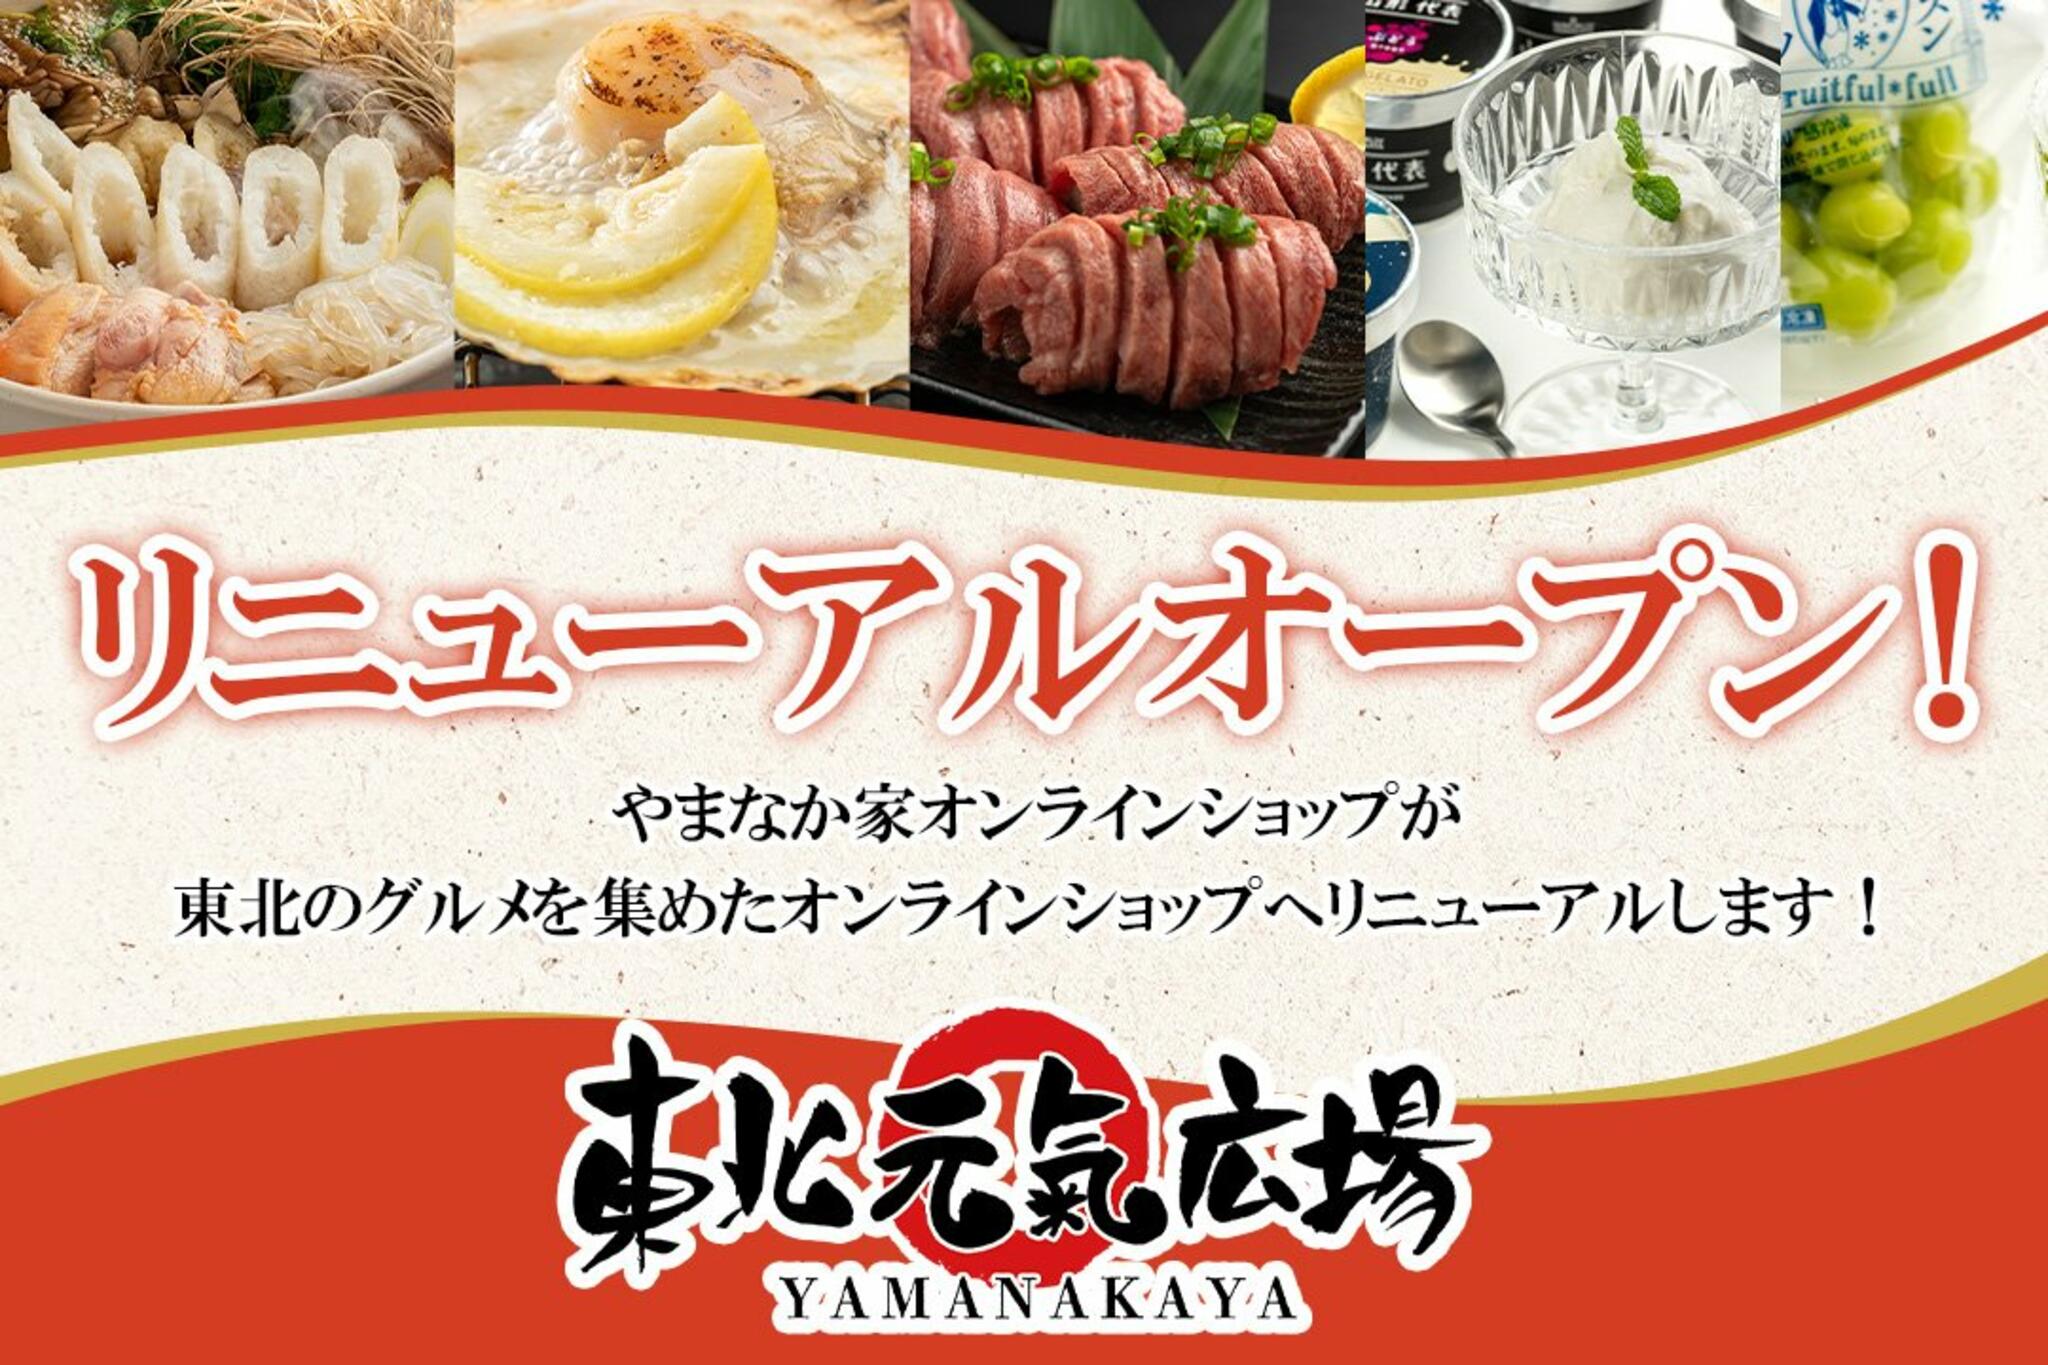 焼肉冷麺やまなか家 西多賀店からのお知らせ(オンラインショップリニューアルキャンペーンのお知らせ)に関する写真